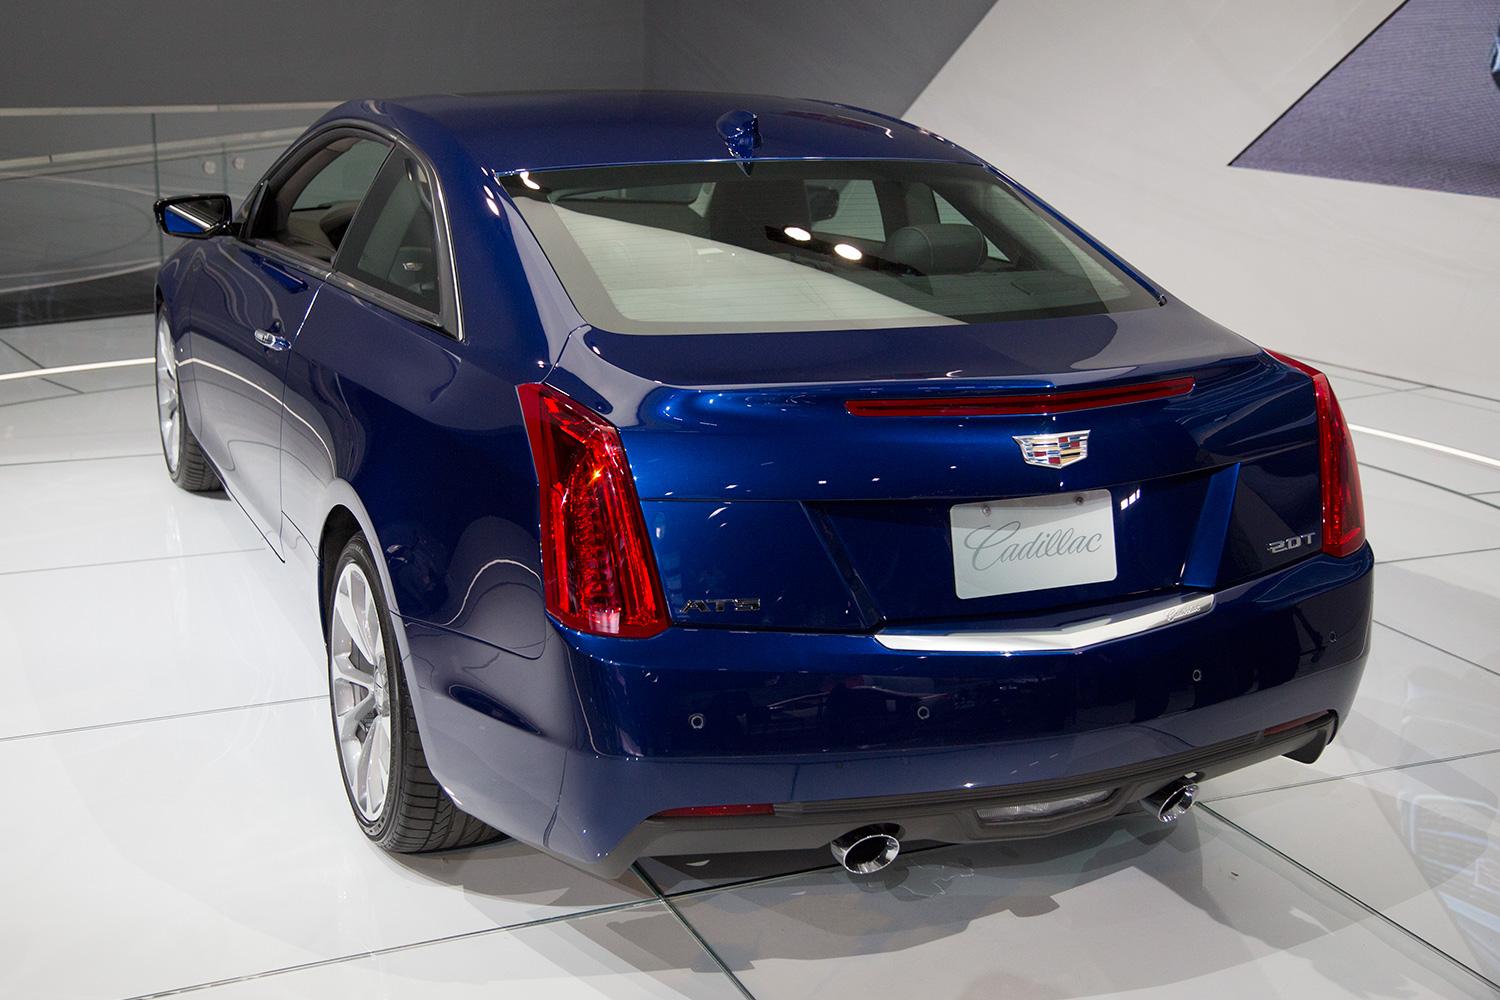 2015 Cadillac ATS Coupe rear angle